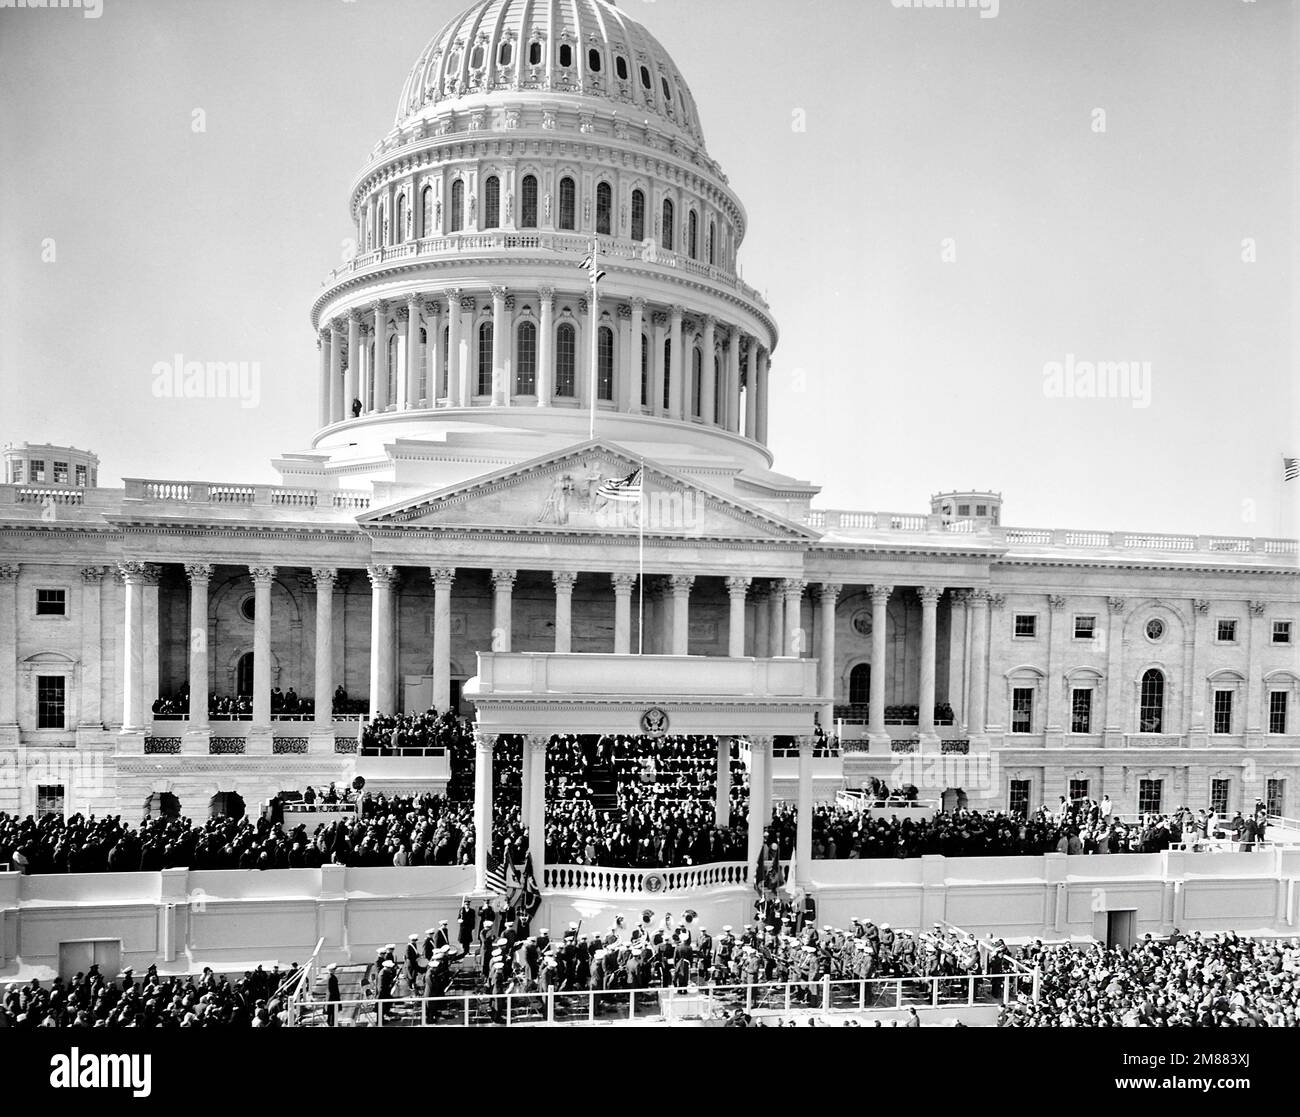 Cérémonie inaugurale des États-Unis Président John F. Kennedy, portique est, États-Unis Bâtiment du Capitole, Washington, D.C., Etats-Unis, architecte du Capitole, 20 janvier 1961 Banque D'Images